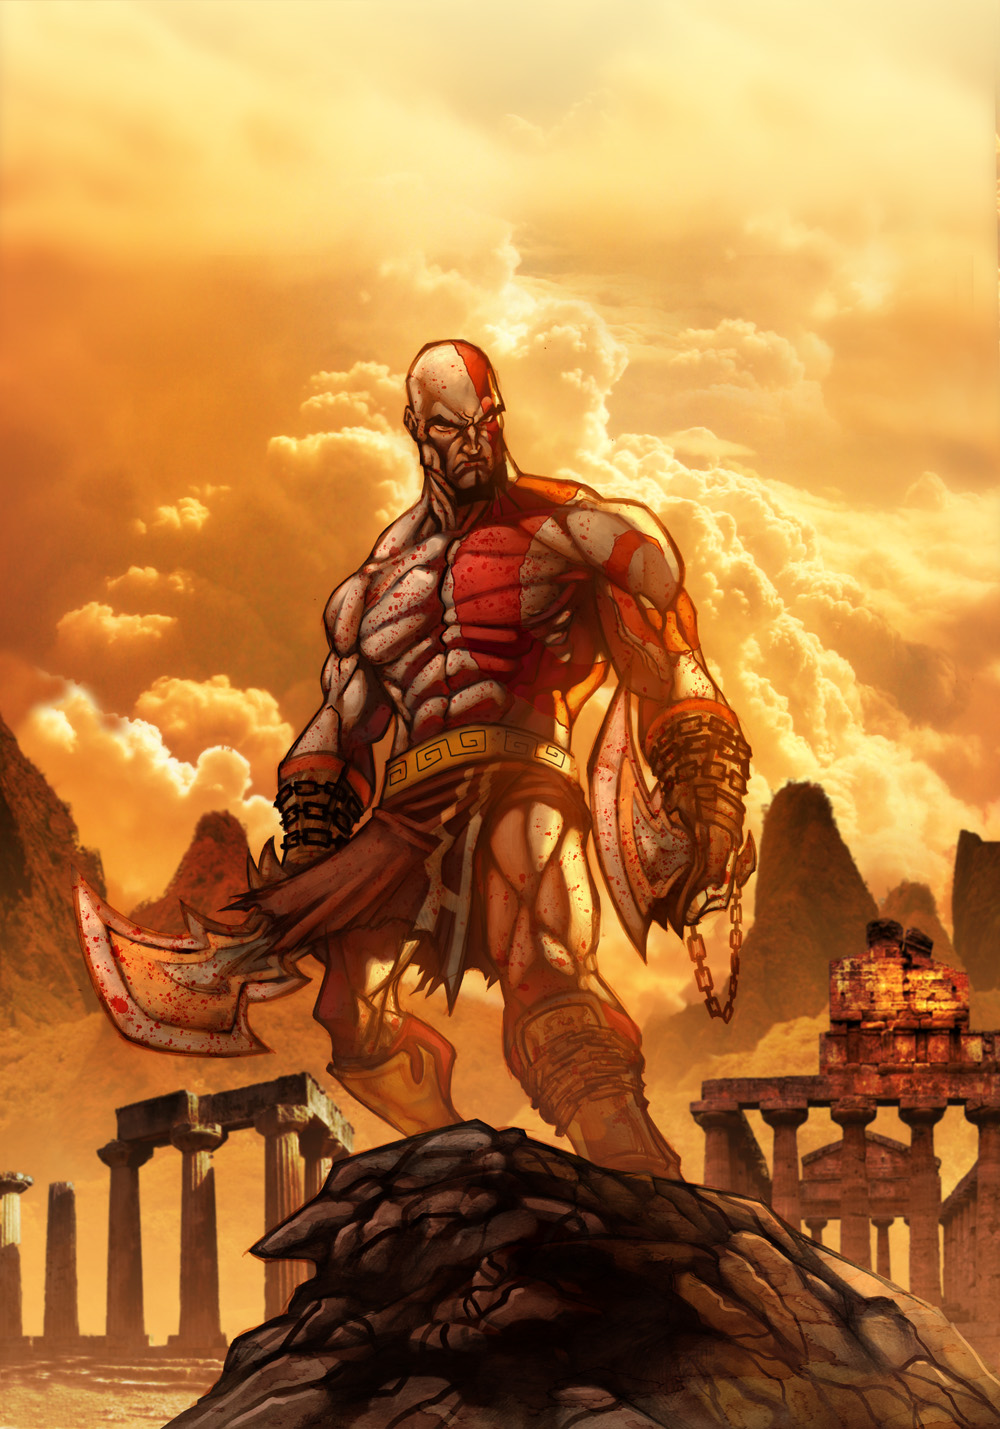 http://gamehunter.files.wordpress.com/2009/03/kratos_the_god_of_war_iii.jpg